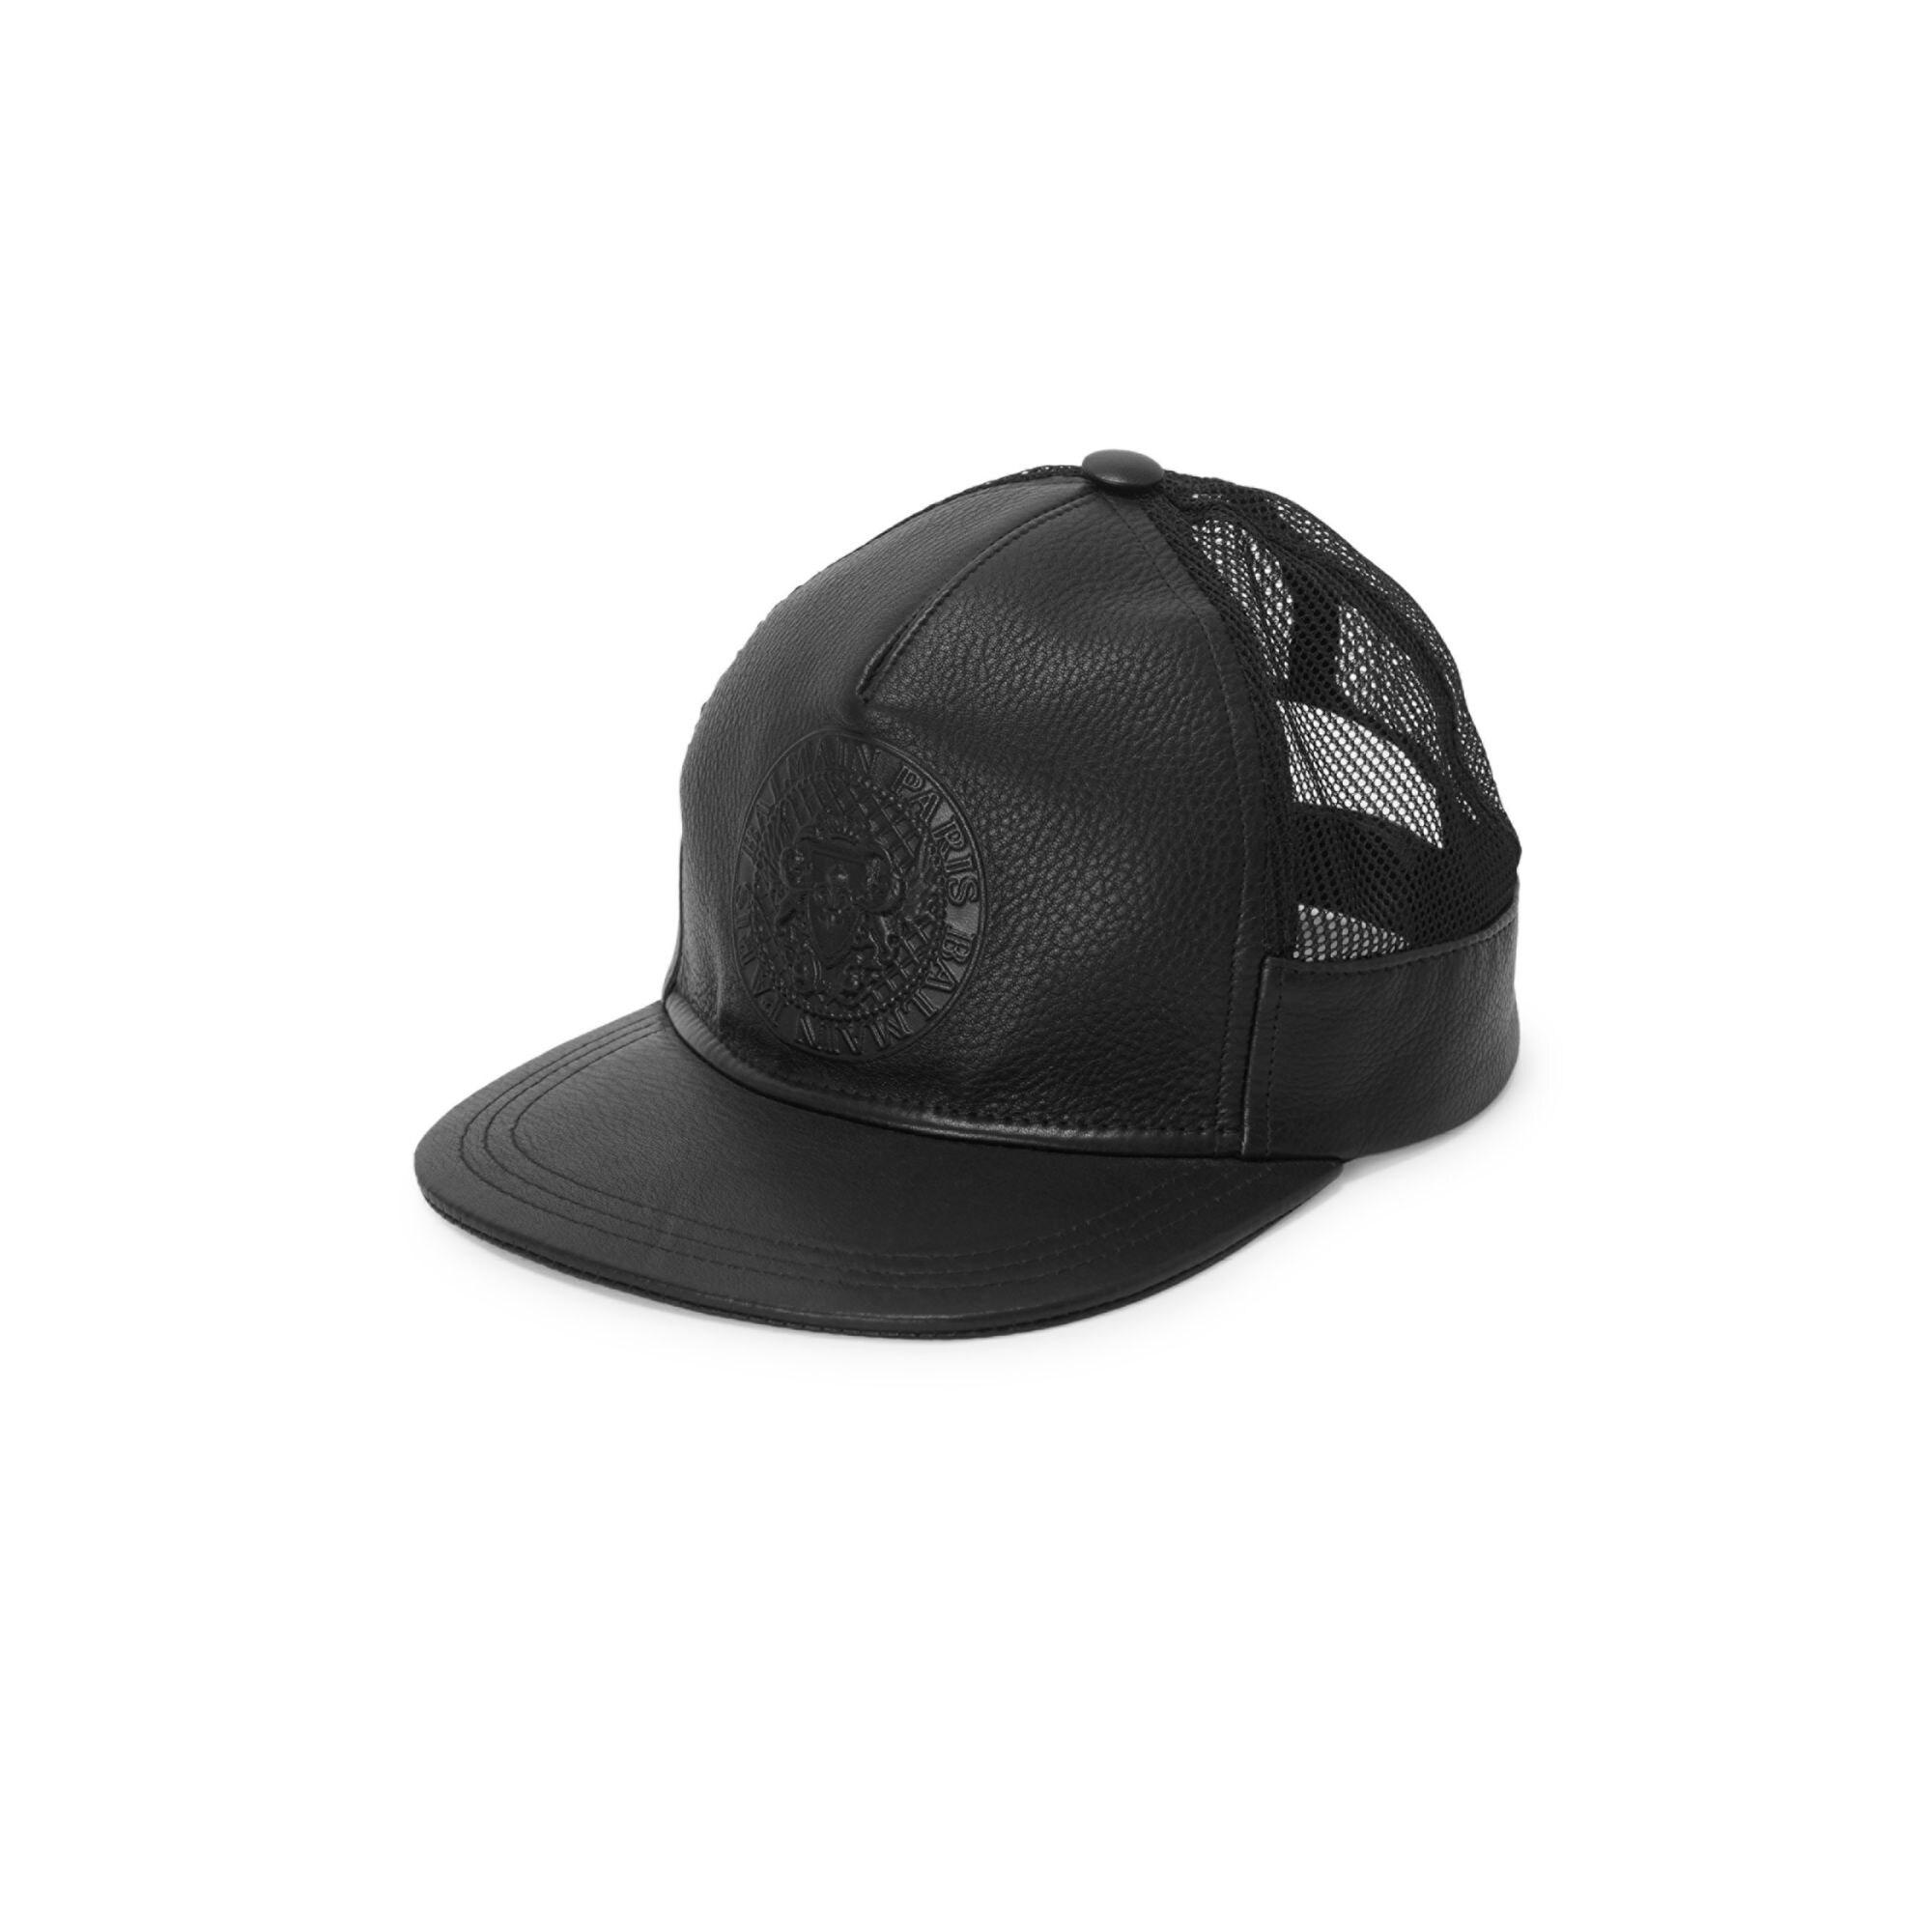 Balmain Leather Logo Crest Embossed Trucker Hat in Black for Men - Lyst